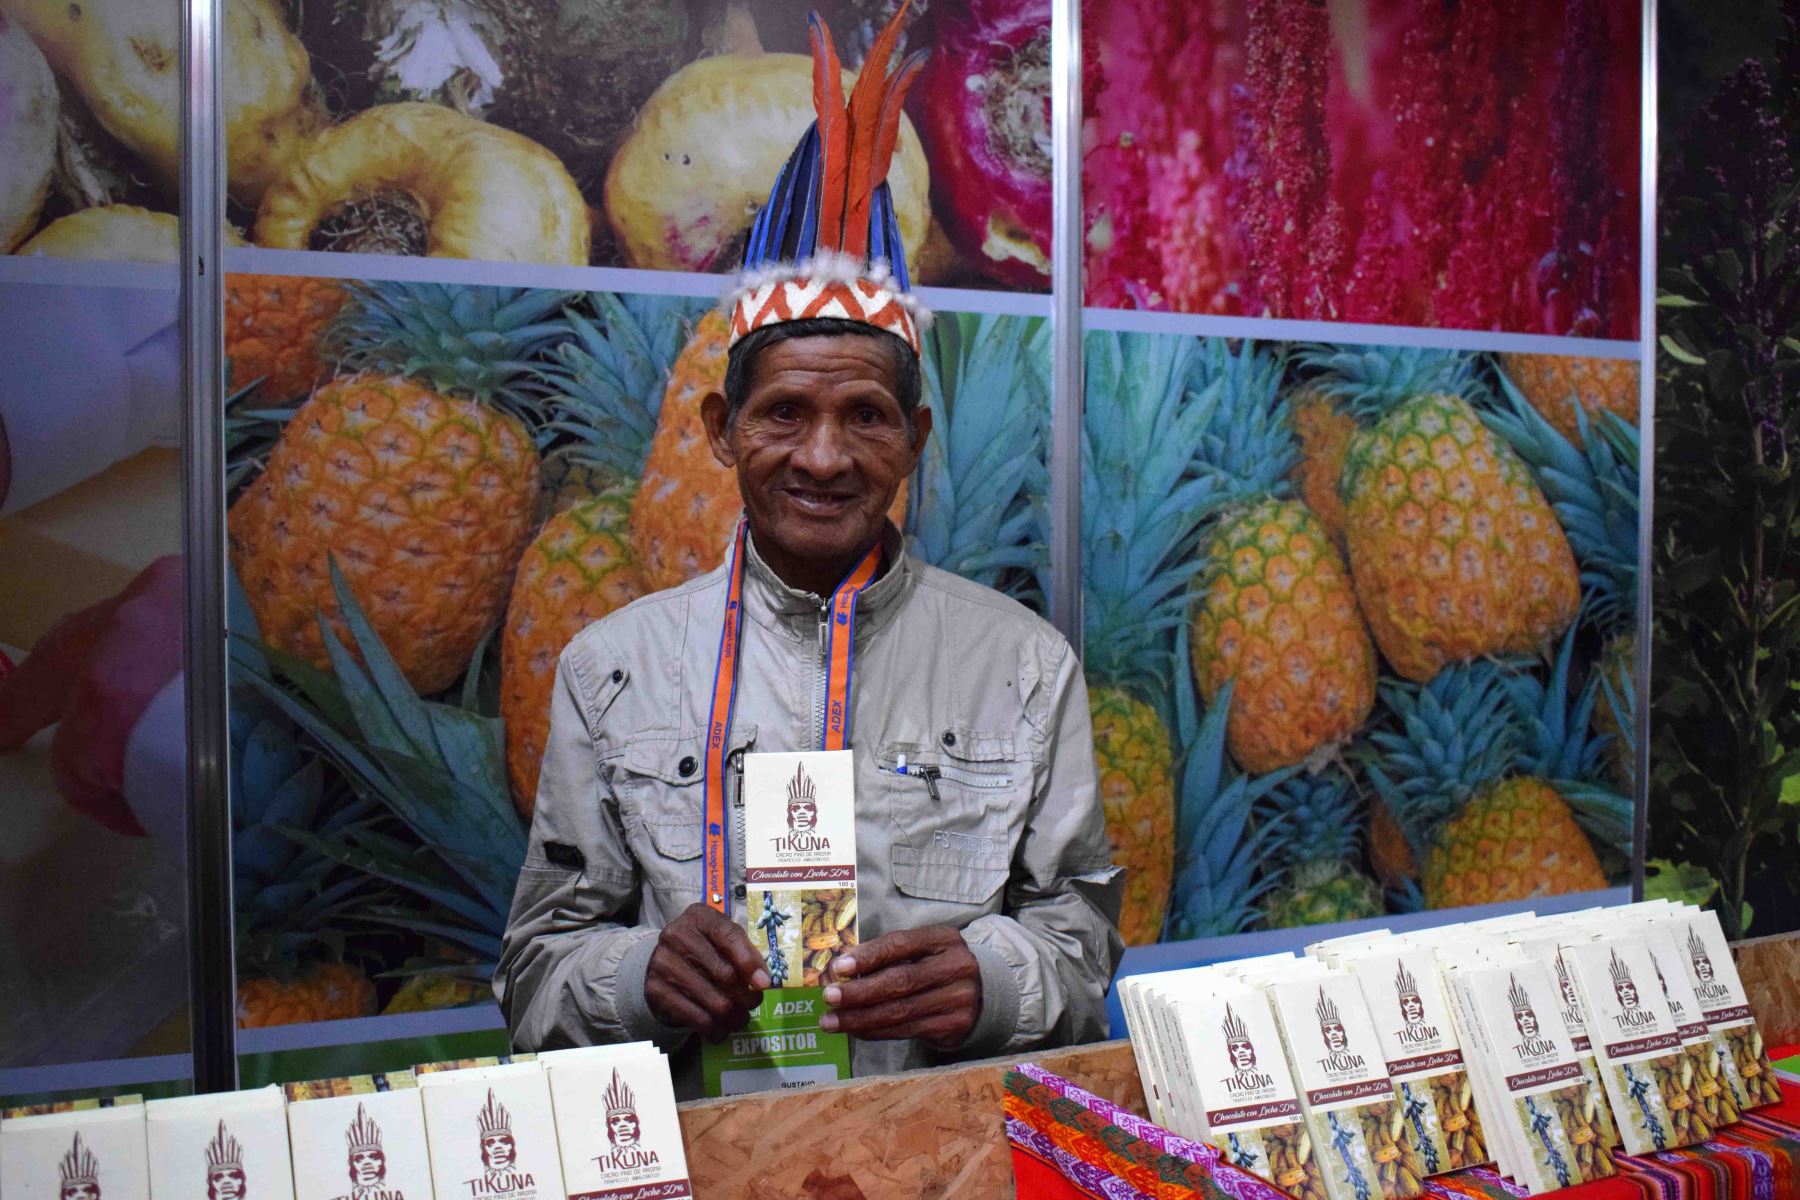 Nativos de la etnia Tikuna expusieron su cacao fino en Expoalimentaria 2017. Foto: Cortesía CAN.